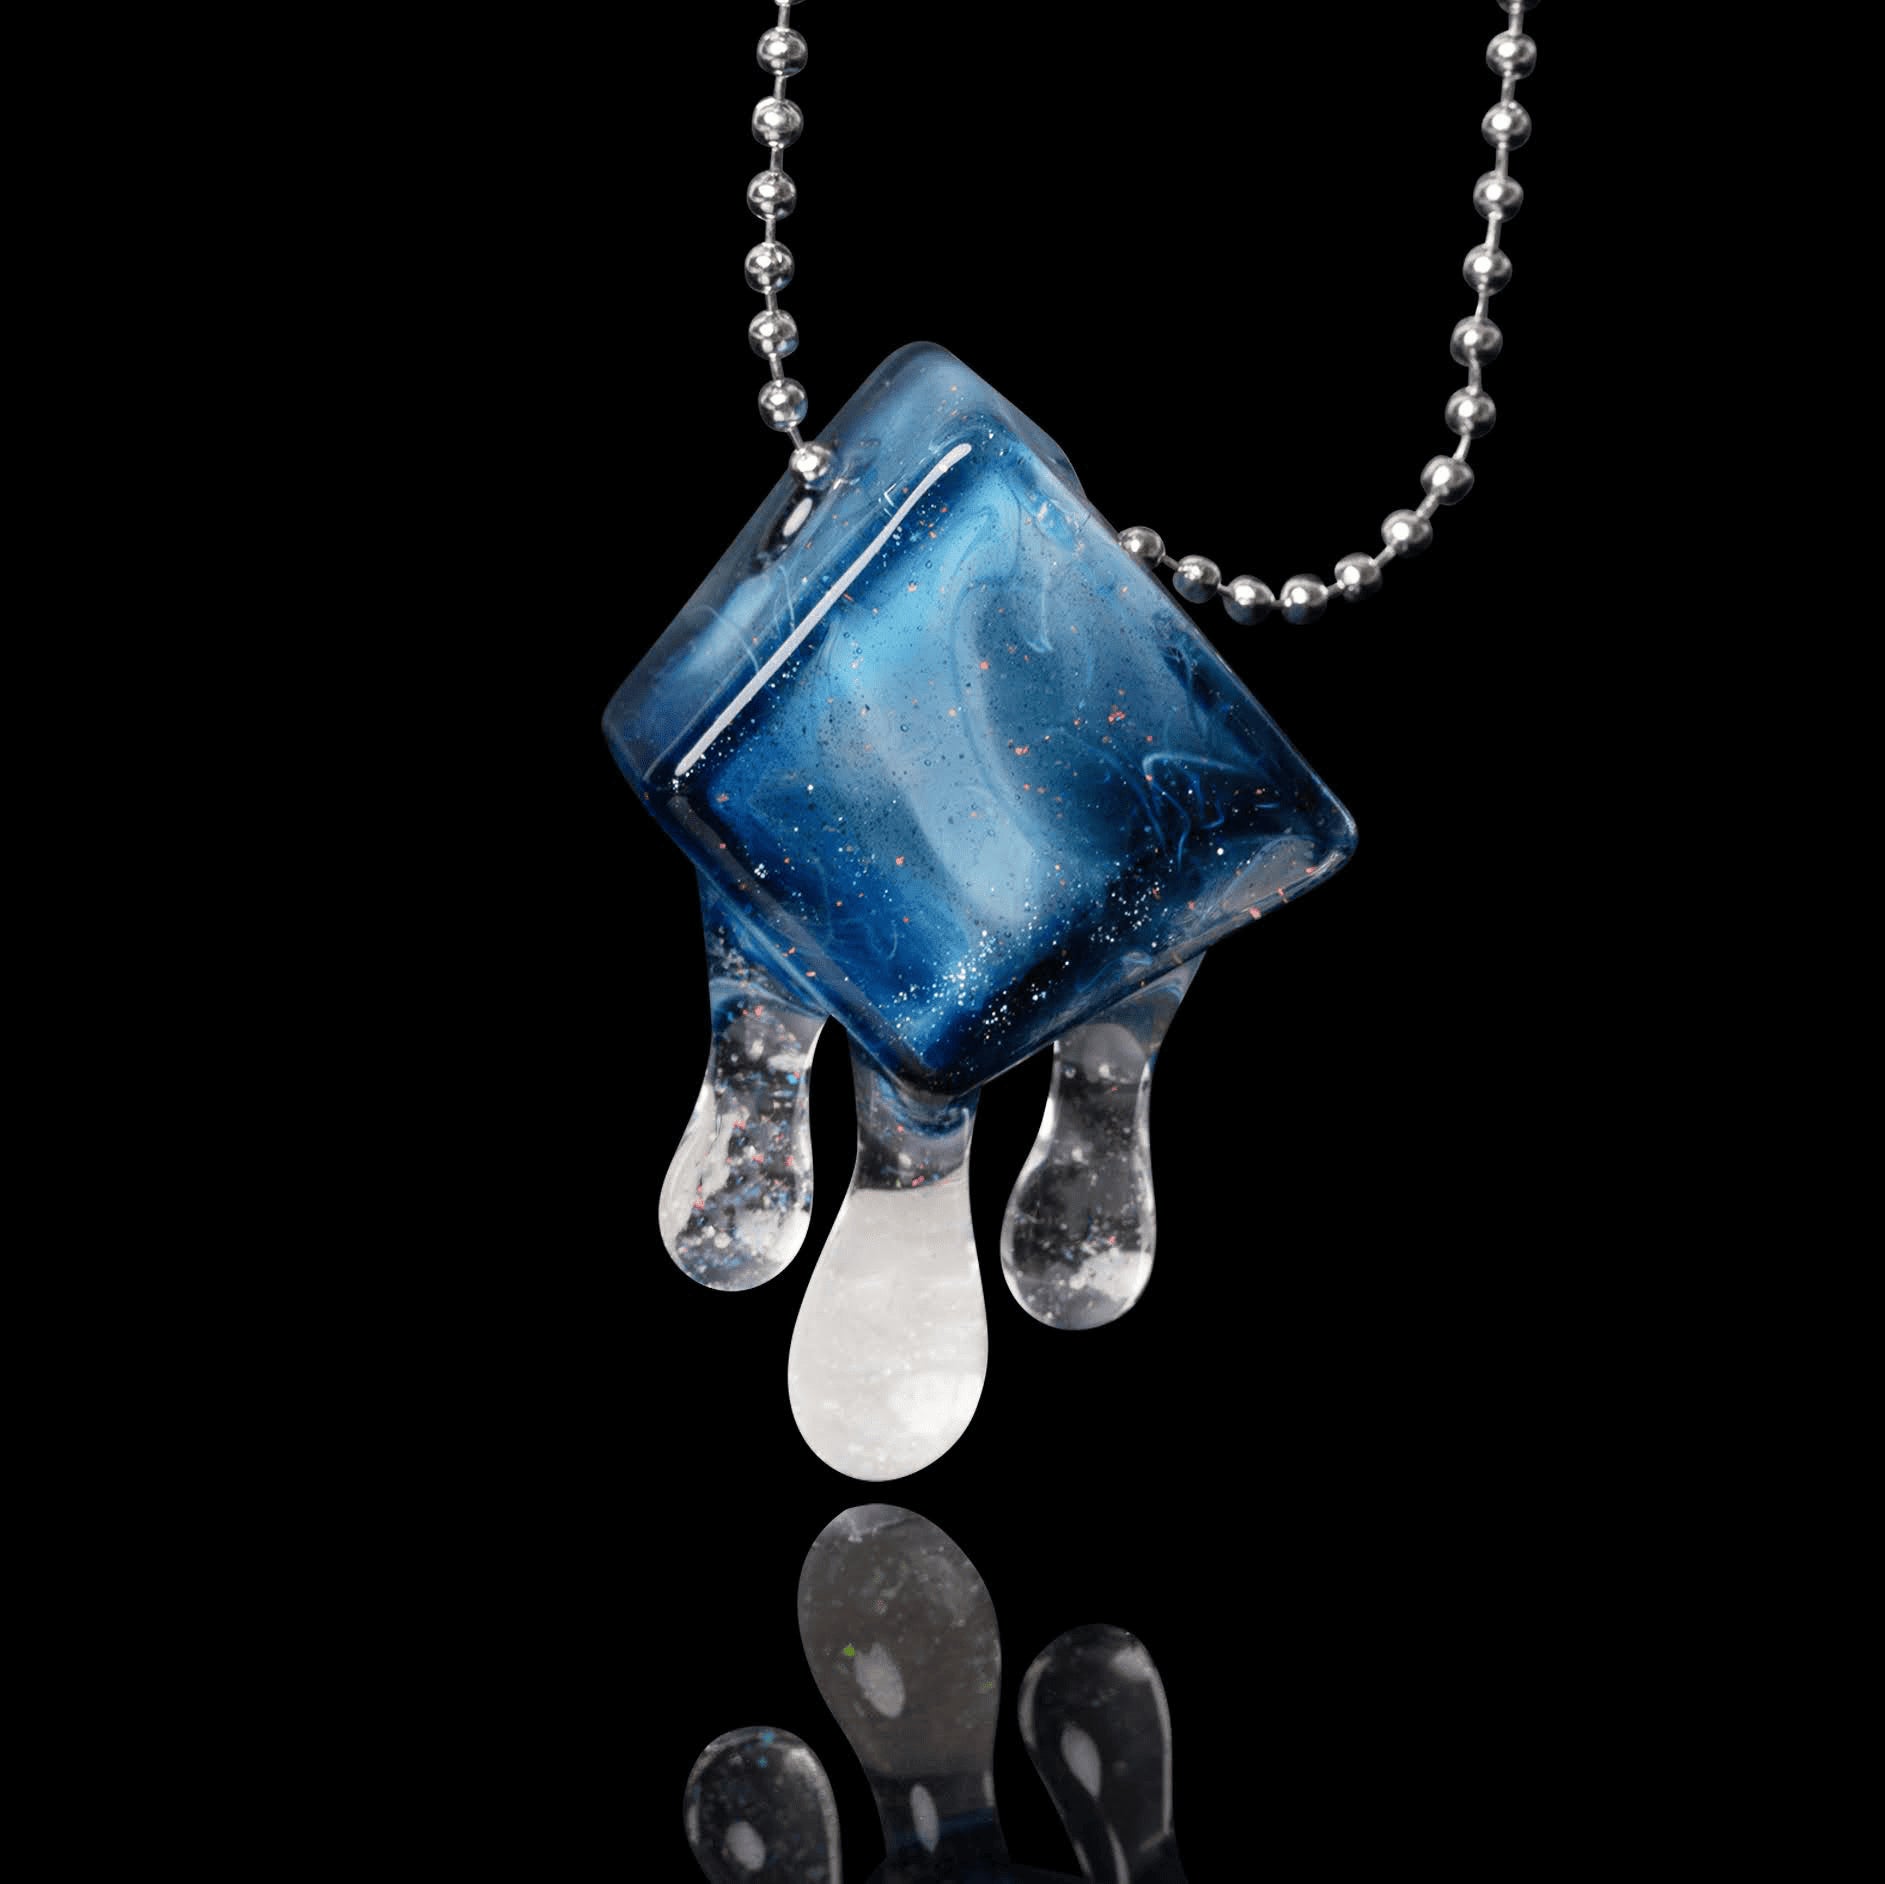 hand-blown glass pendant - Collab Pendant (B) by Chaka x Scomo Moanet (Scribble Season 2022)